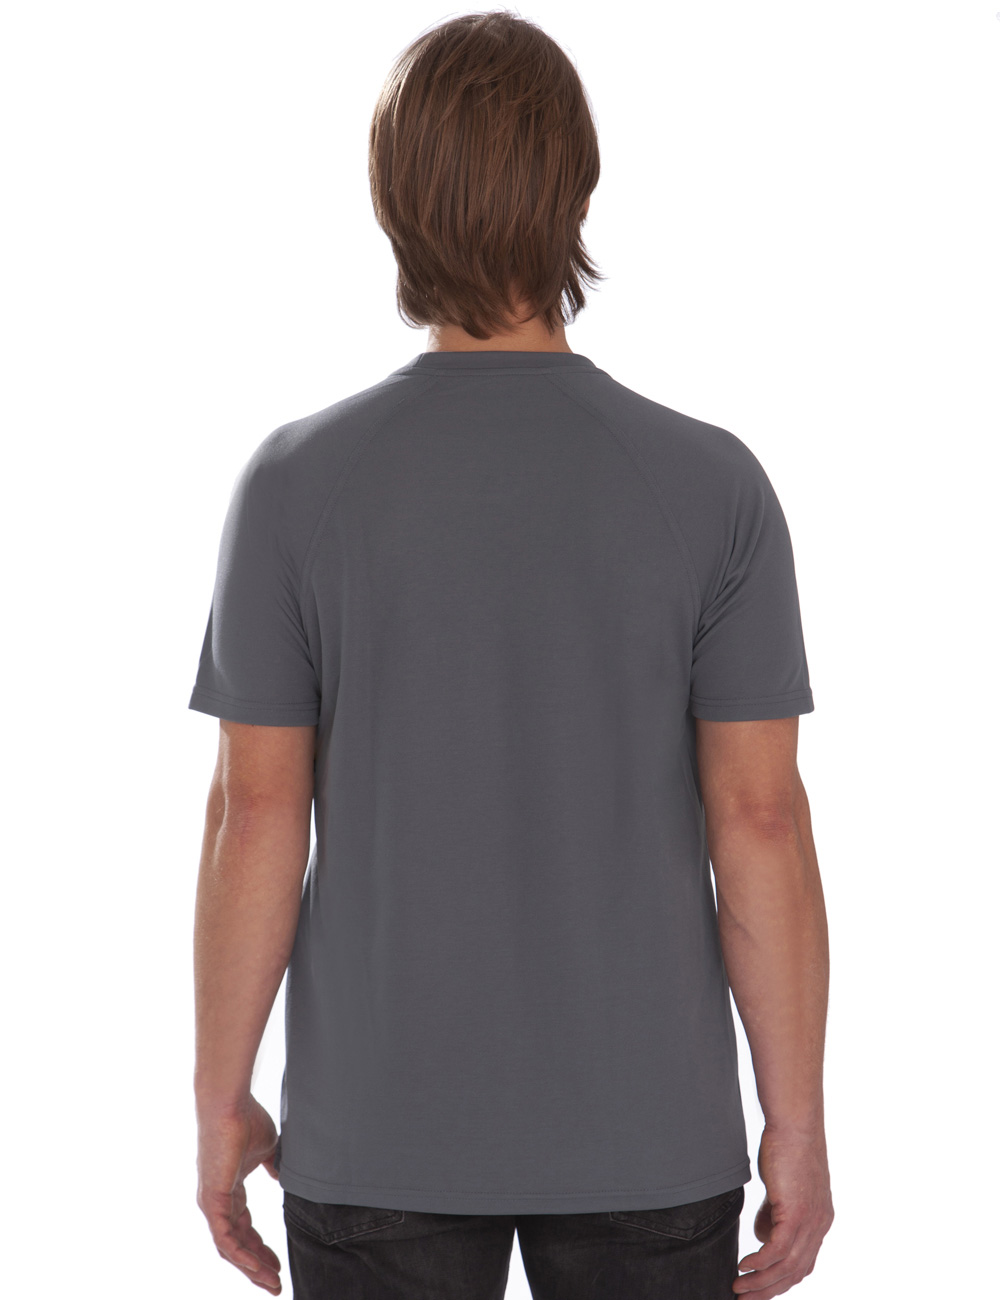 UV T-Shirt für Herren Outdoor Rundhals grau back